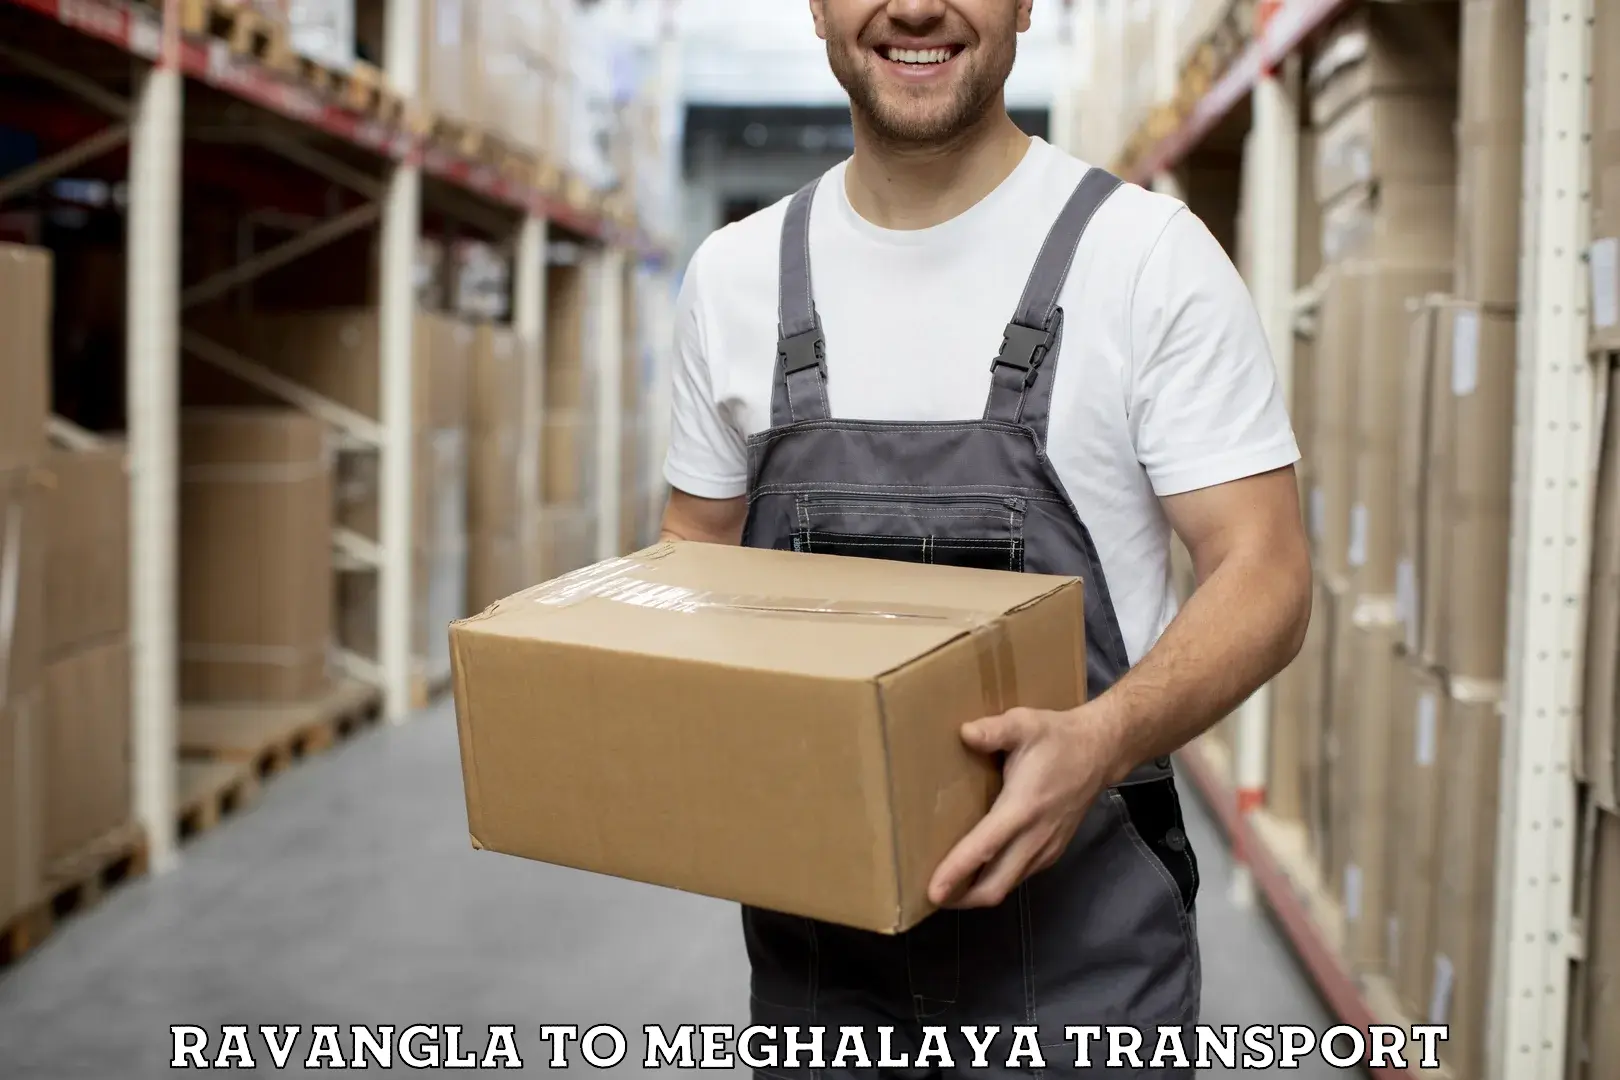 Delivery service Ravangla to Meghalaya